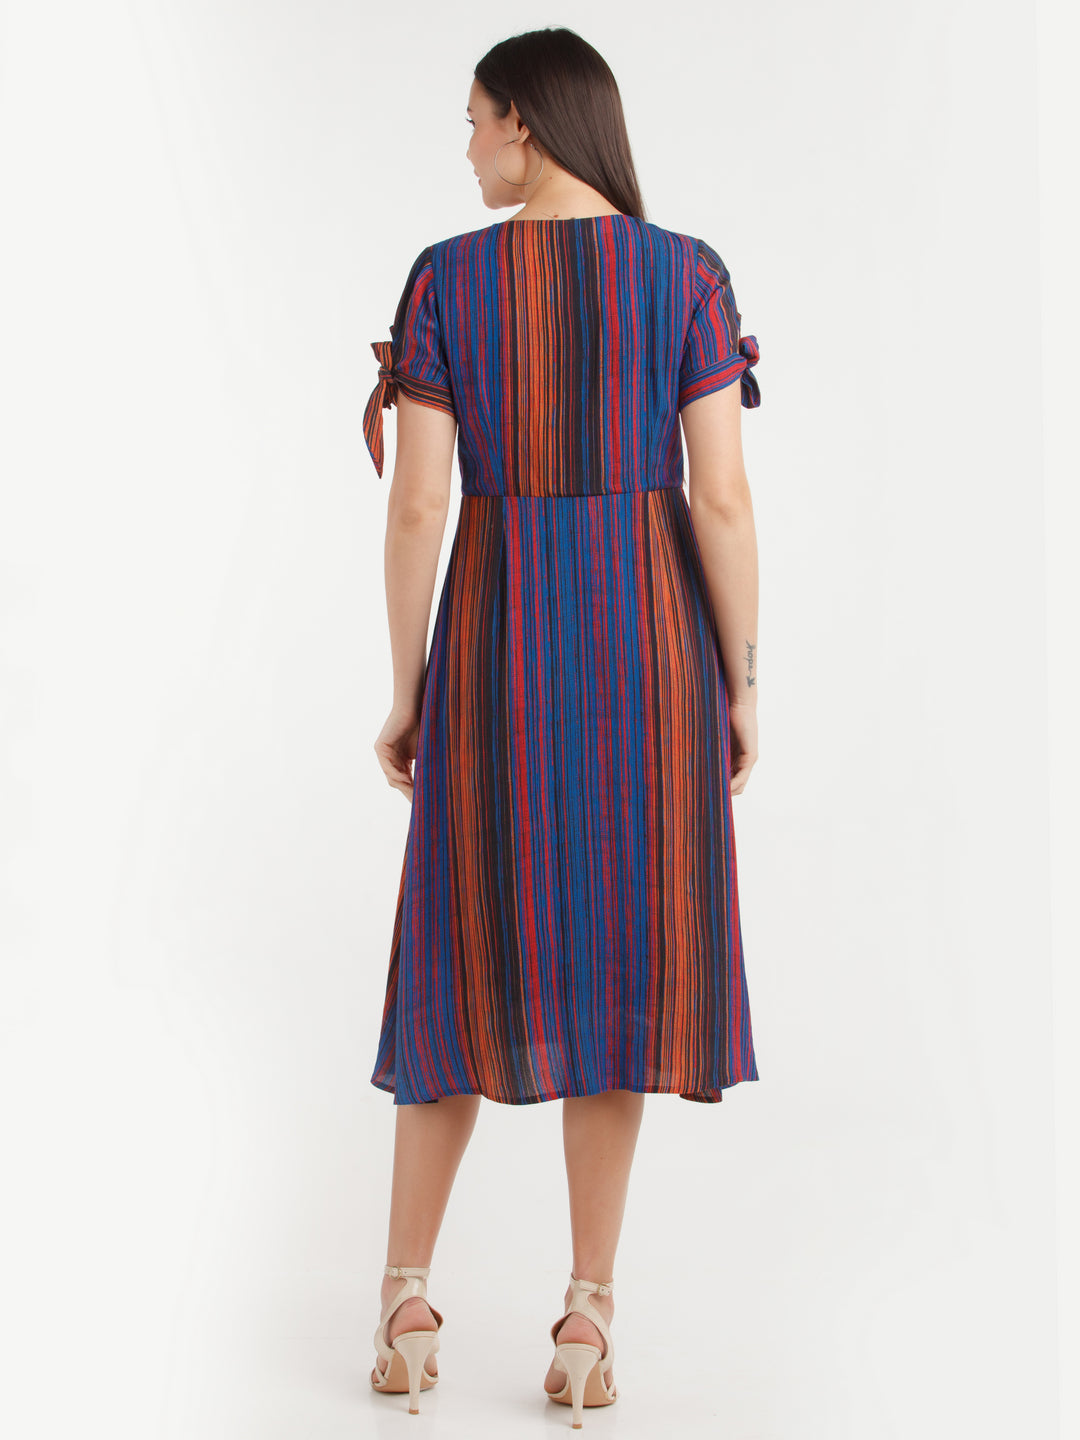 Multi Color Striped Midi Dress For Women